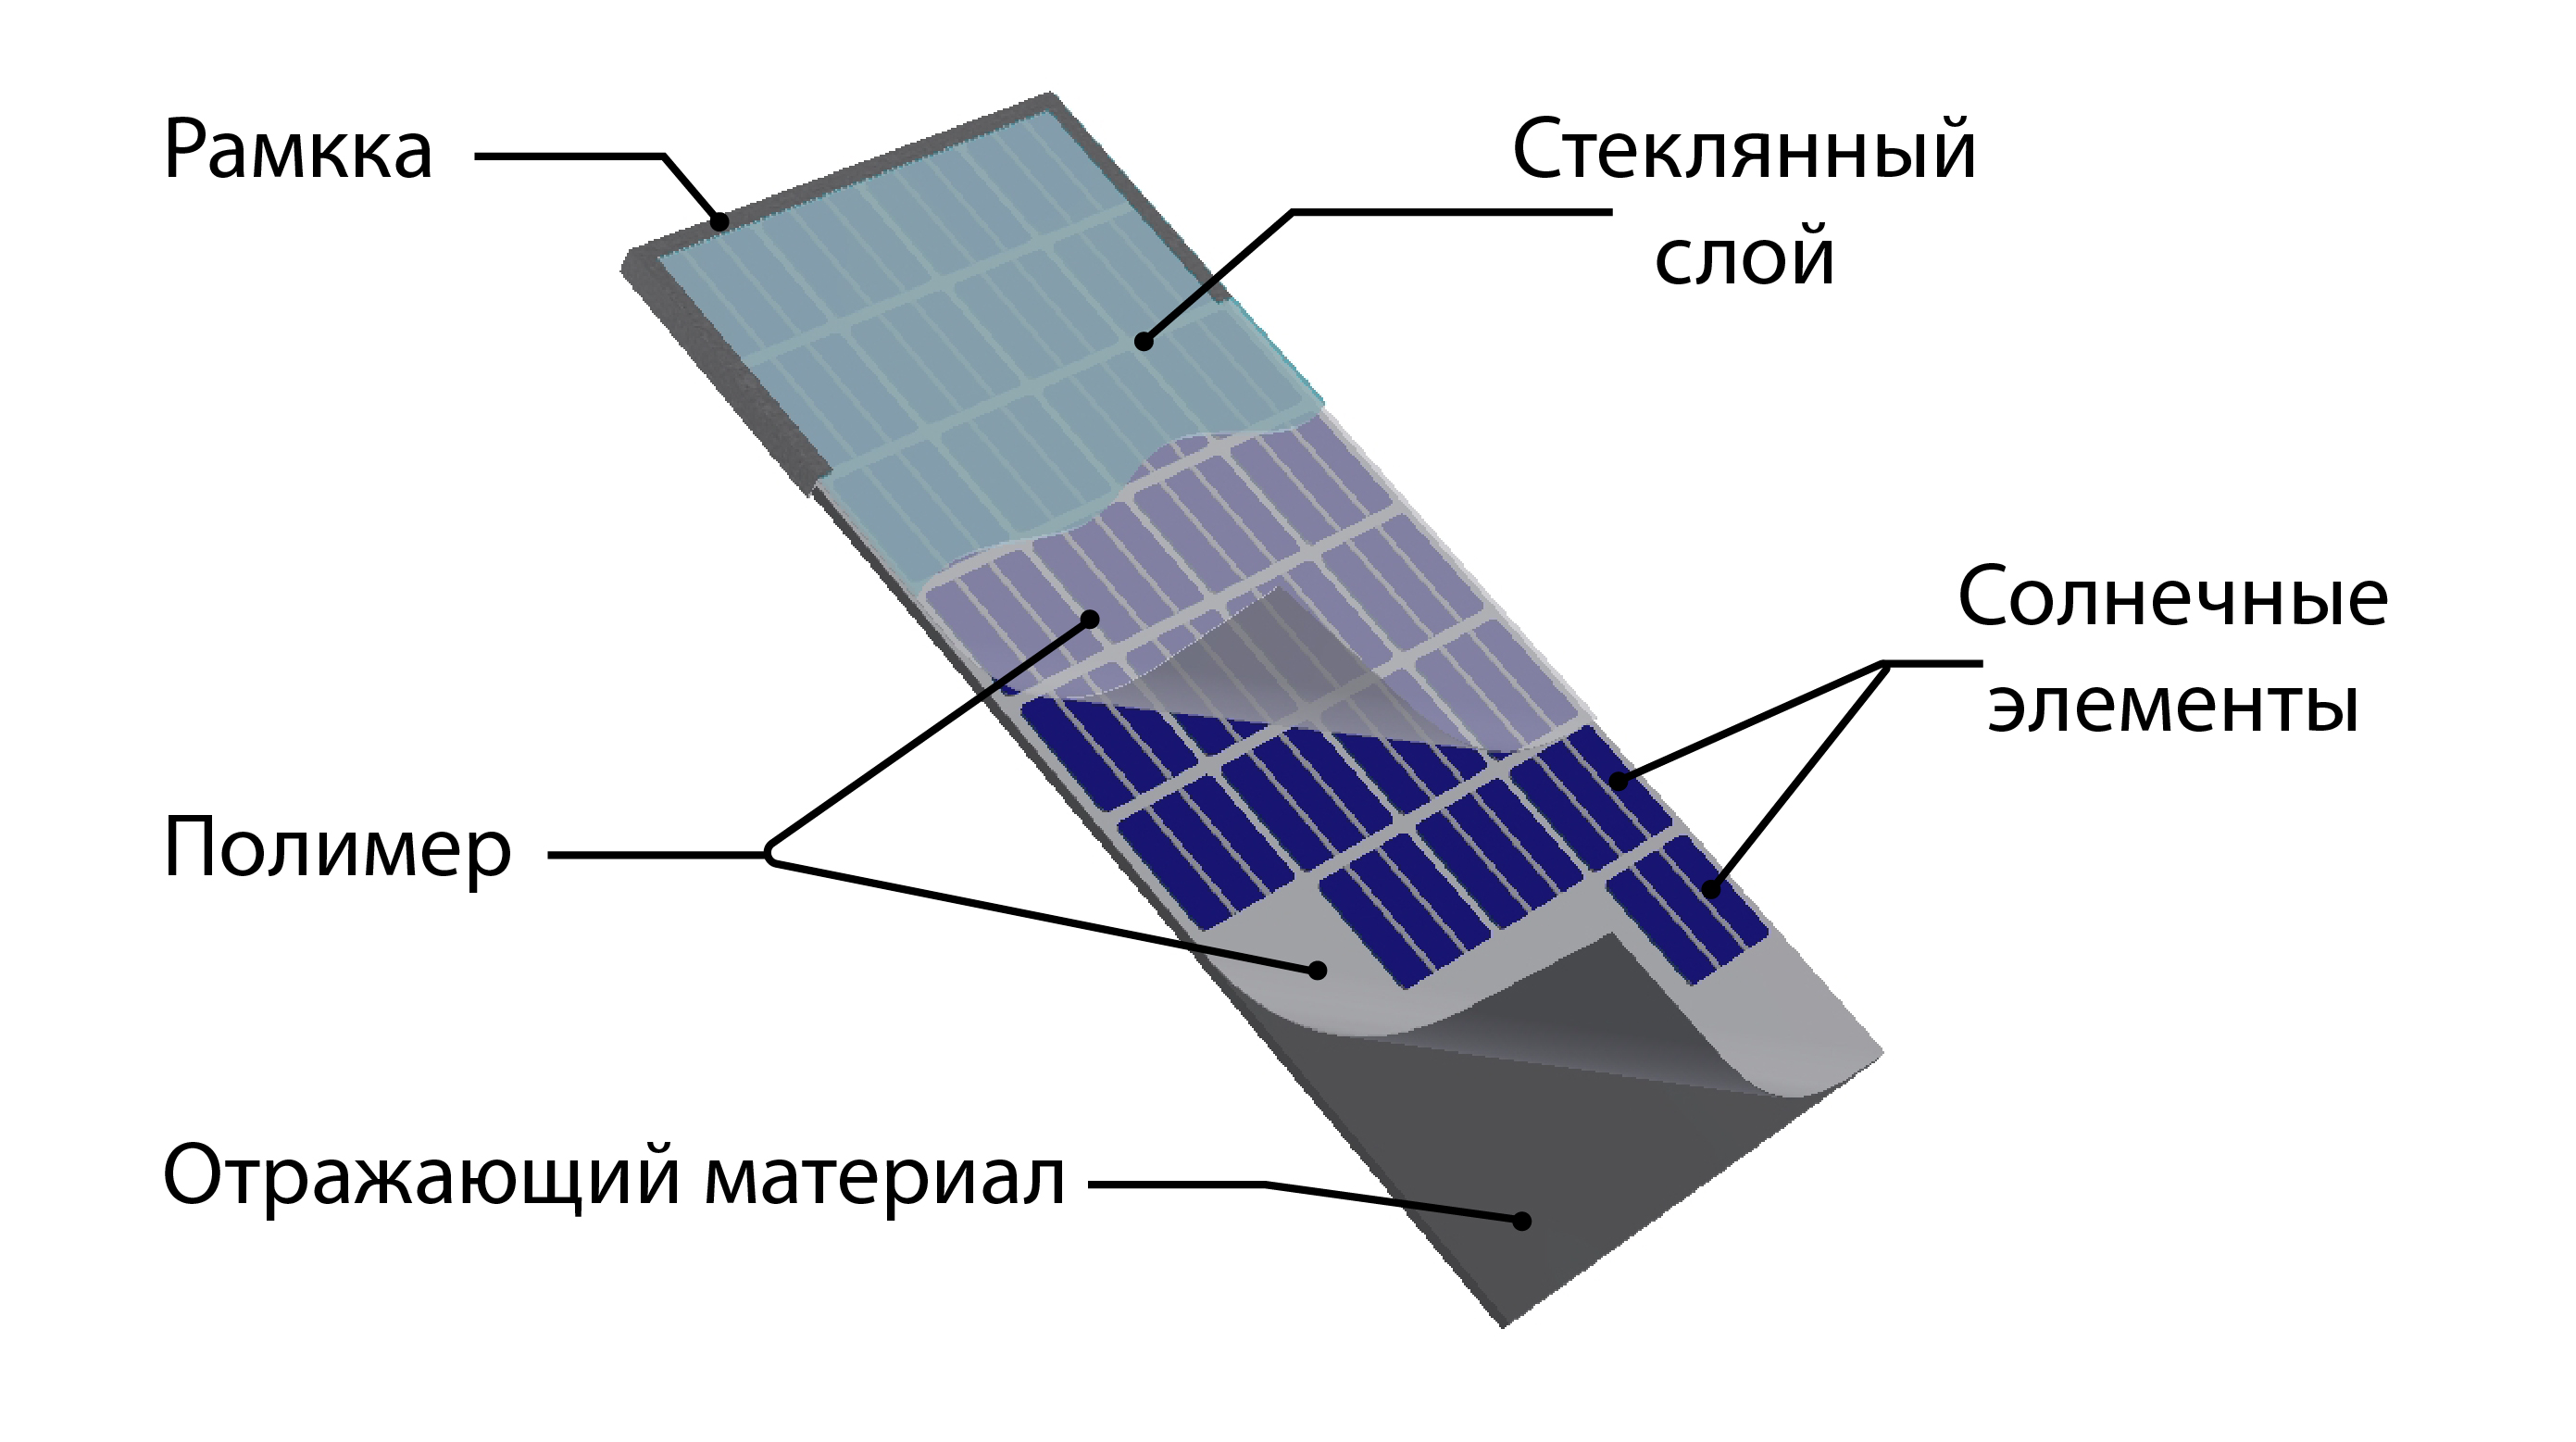 Солнечный элемент представляет собой p-n переход, это по сути два соприкасающихся полупроводника разной проводимости с разделяющим слоем